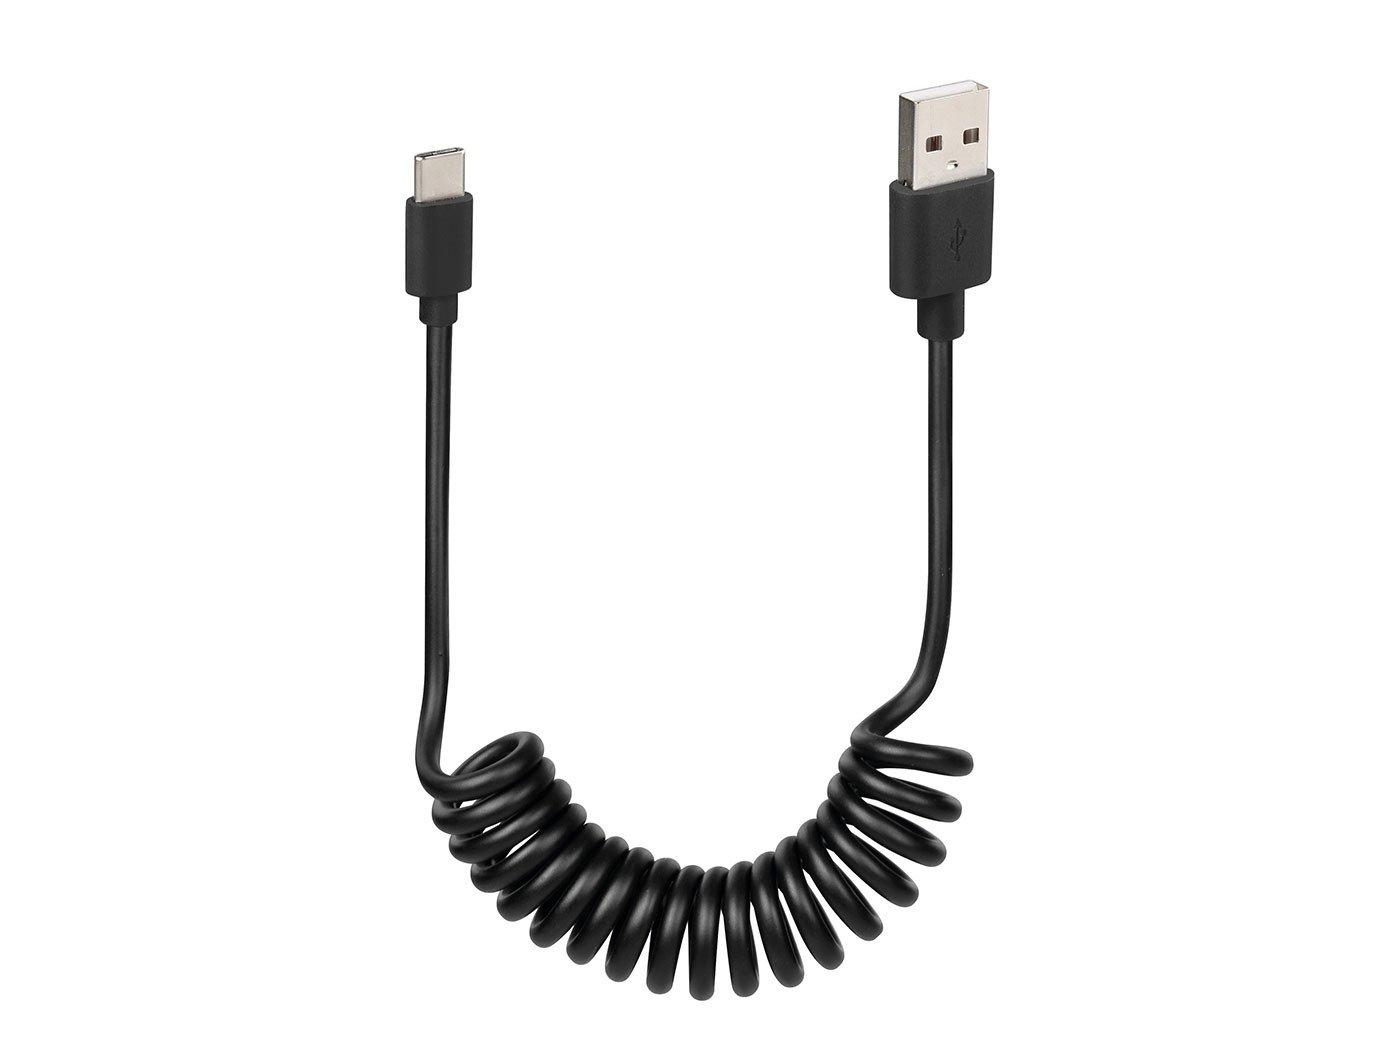 USB spirál kábel / töltőkábel -C- 100cm fekete